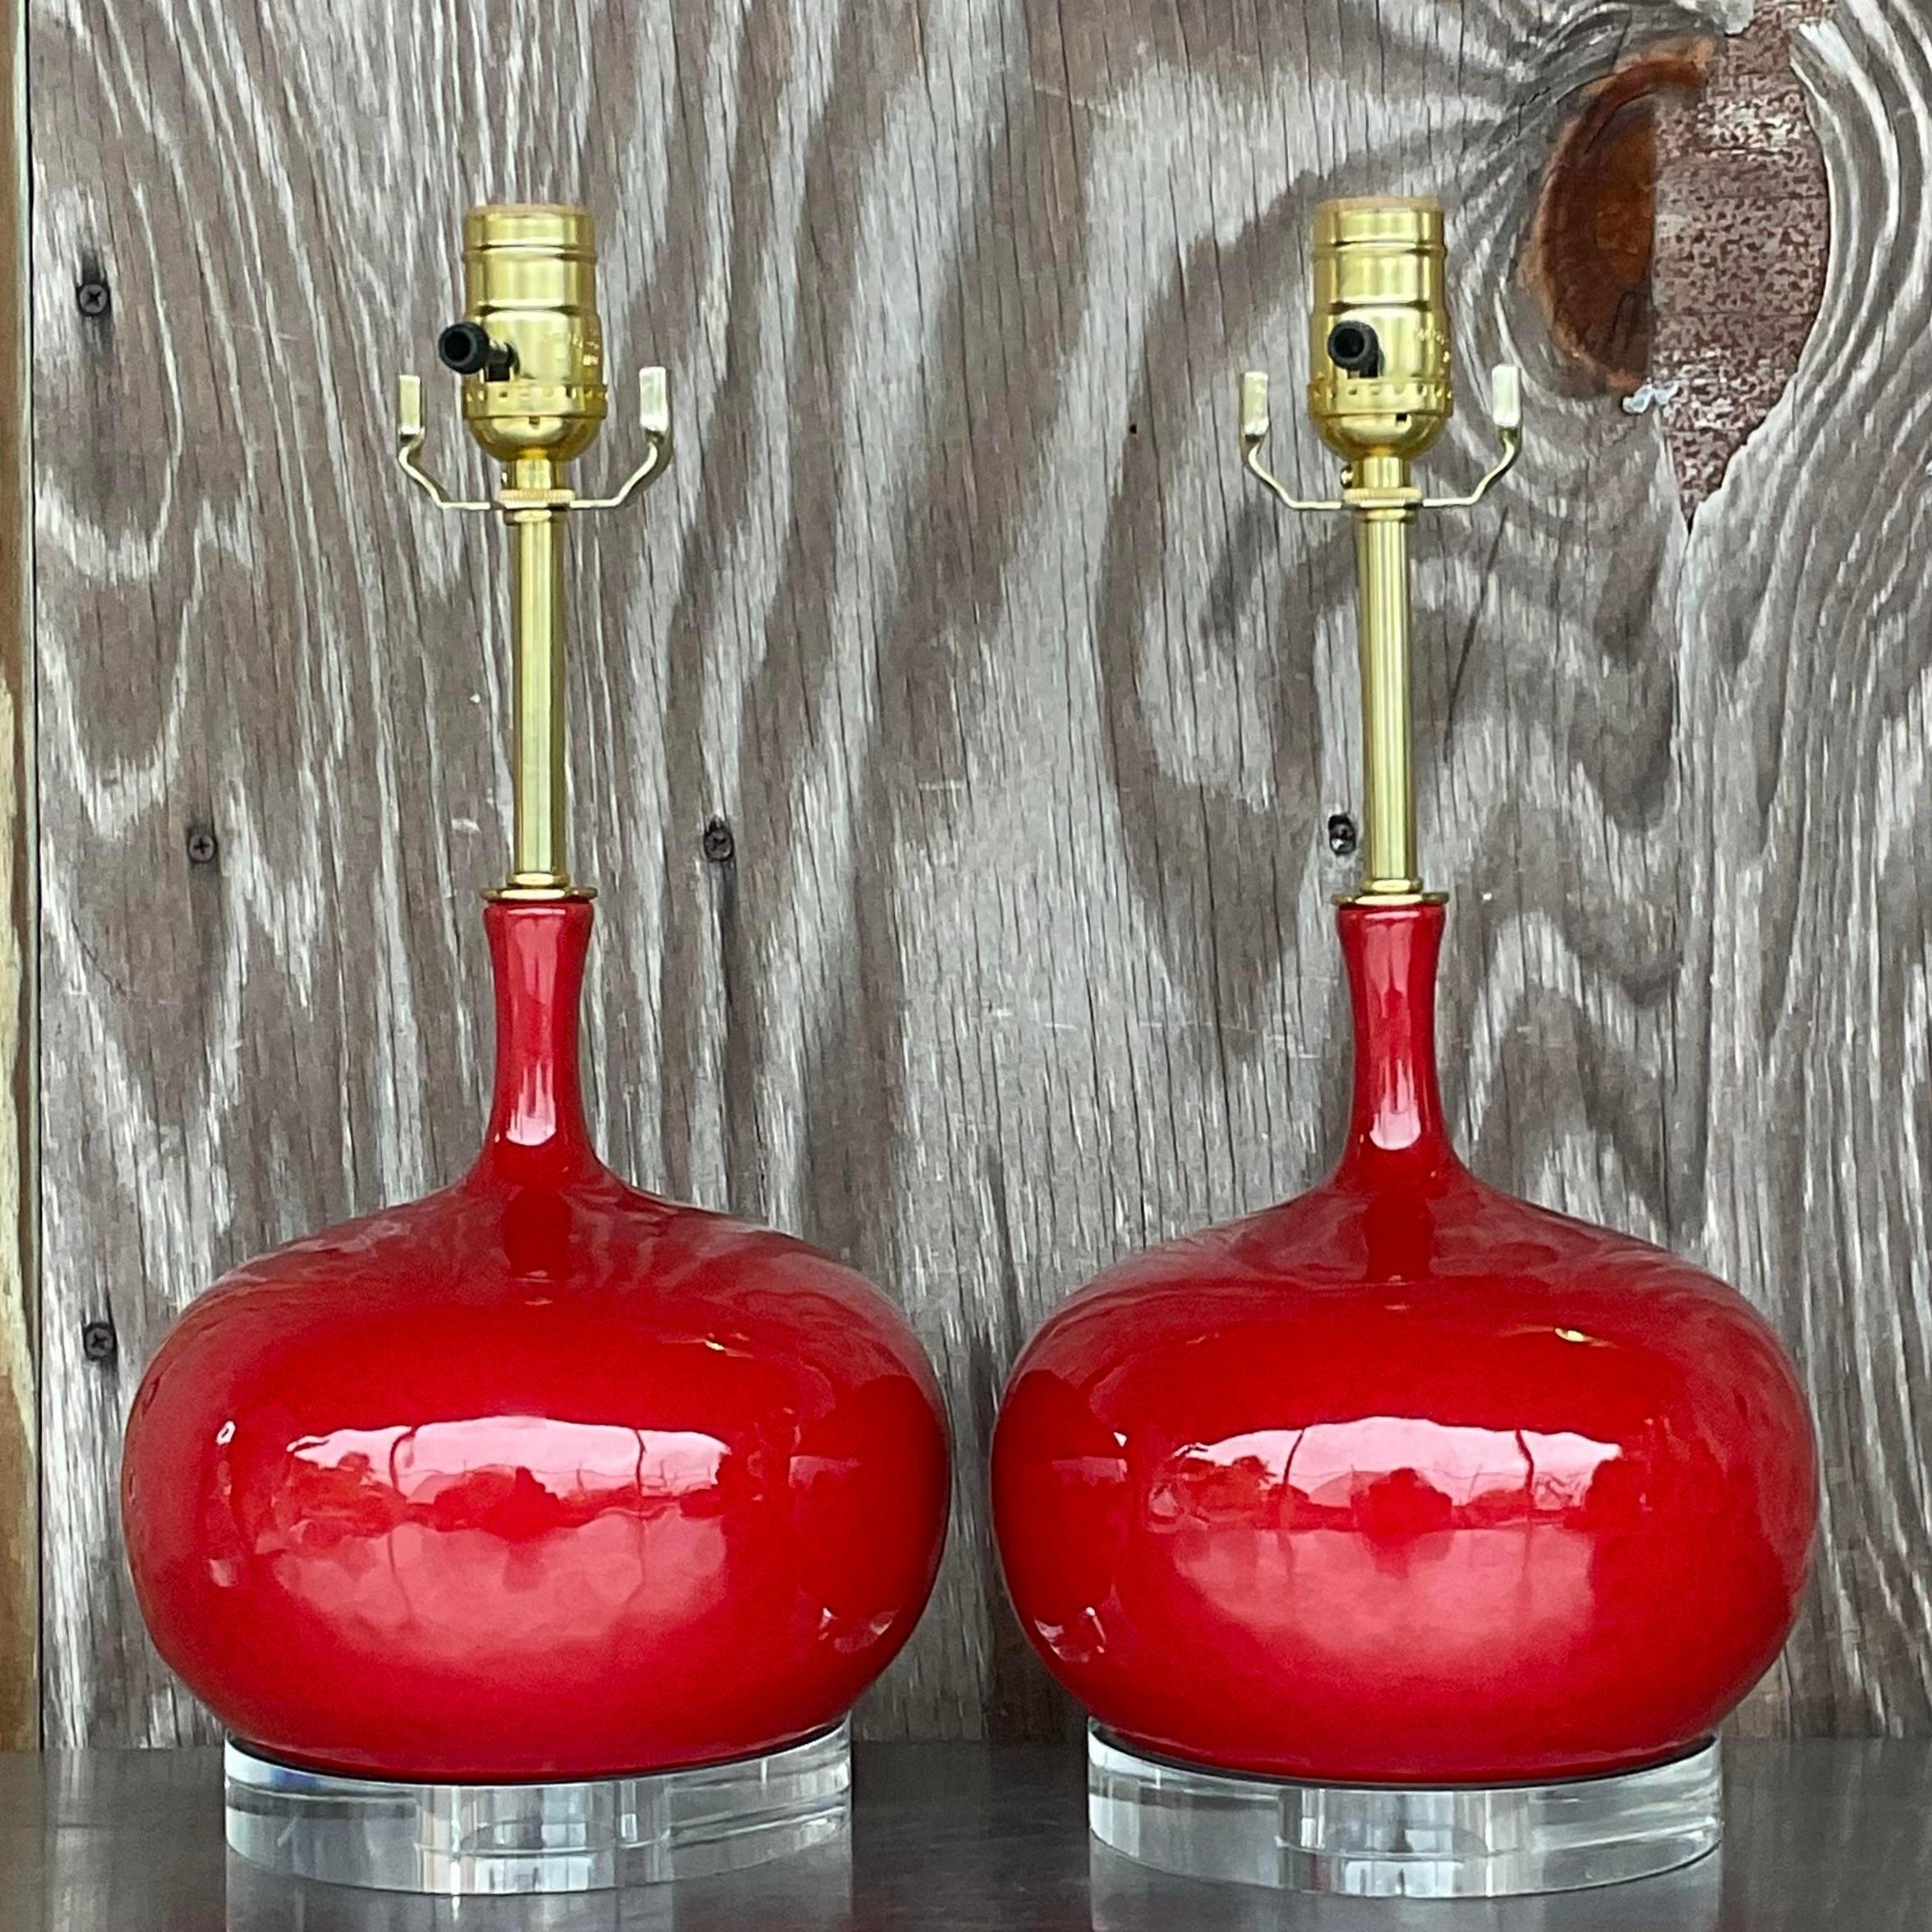 Une fabuleuse paire de lampes de table Regency vintage. Un rouge pomme d'amour brillant dans une finition céramique émaillée. Entièrement restauré avec tous les nouveaux câblages, la quincaillerie et les socles en lucite. Acquis d'une propriété de